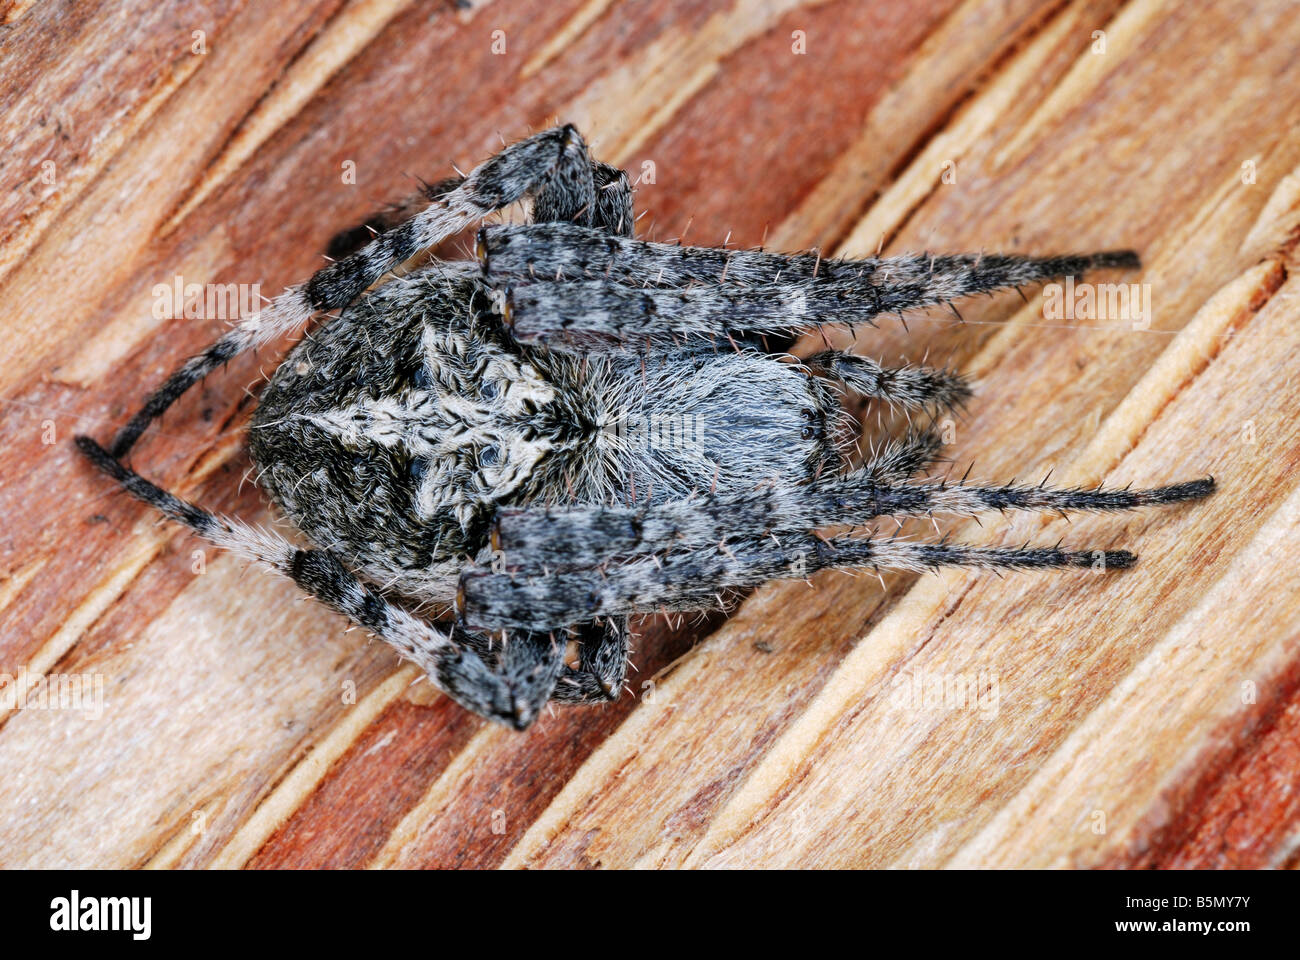 Neoscona espèces. une araignée trouvée sur son site web dans une roche de crack. L'Arunachal Pradesh. L'Inde Banque D'Images